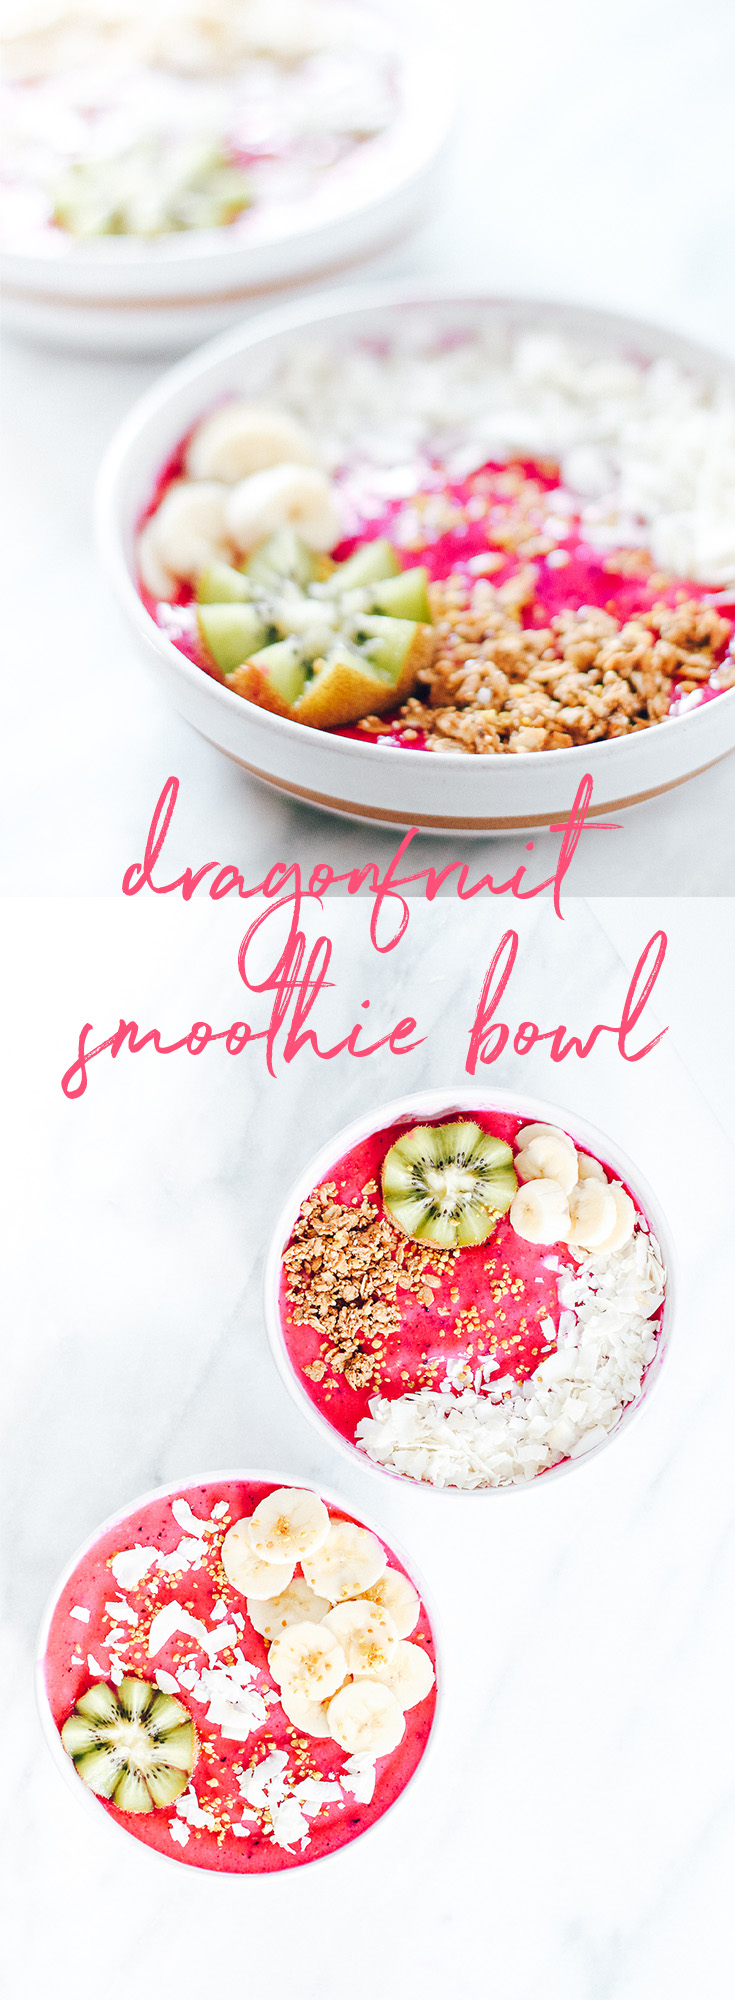 dragonfruit smoothie bowl, pitaya, gluten free, dairy free, vegan, paleo